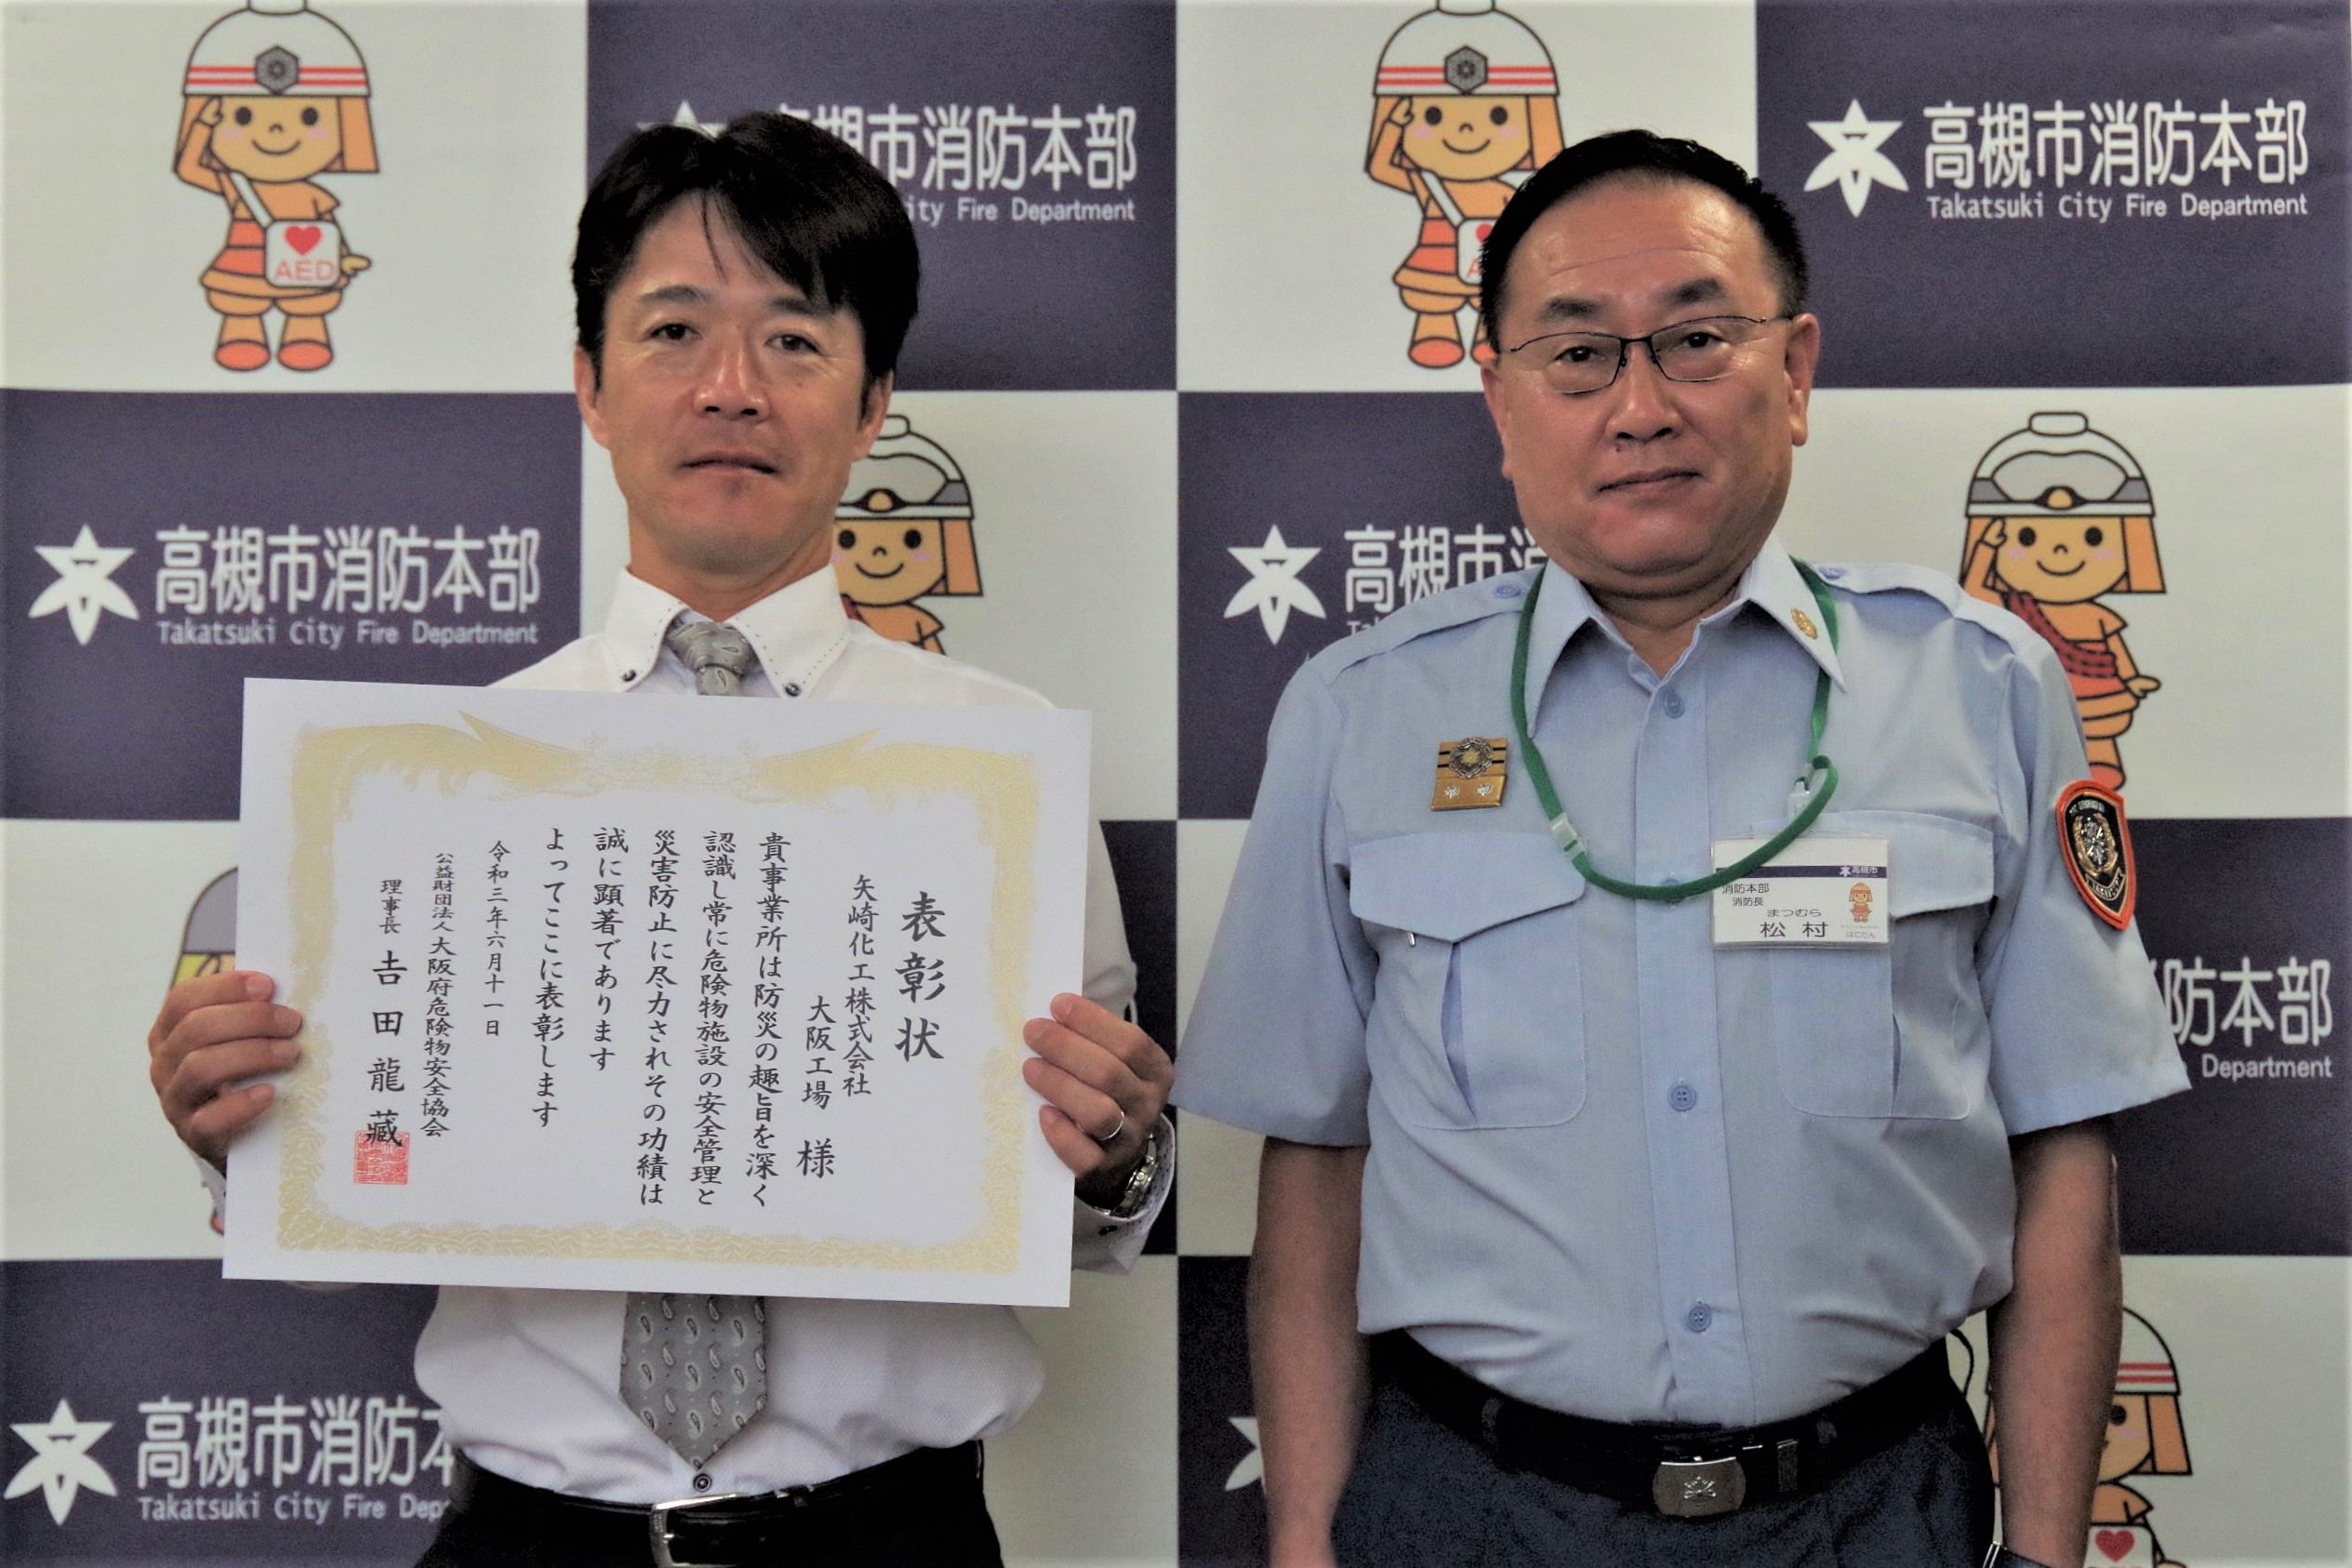 令和３年度 大阪府危険物安全大会 表彰の伝達式を行いました。 | 高槻